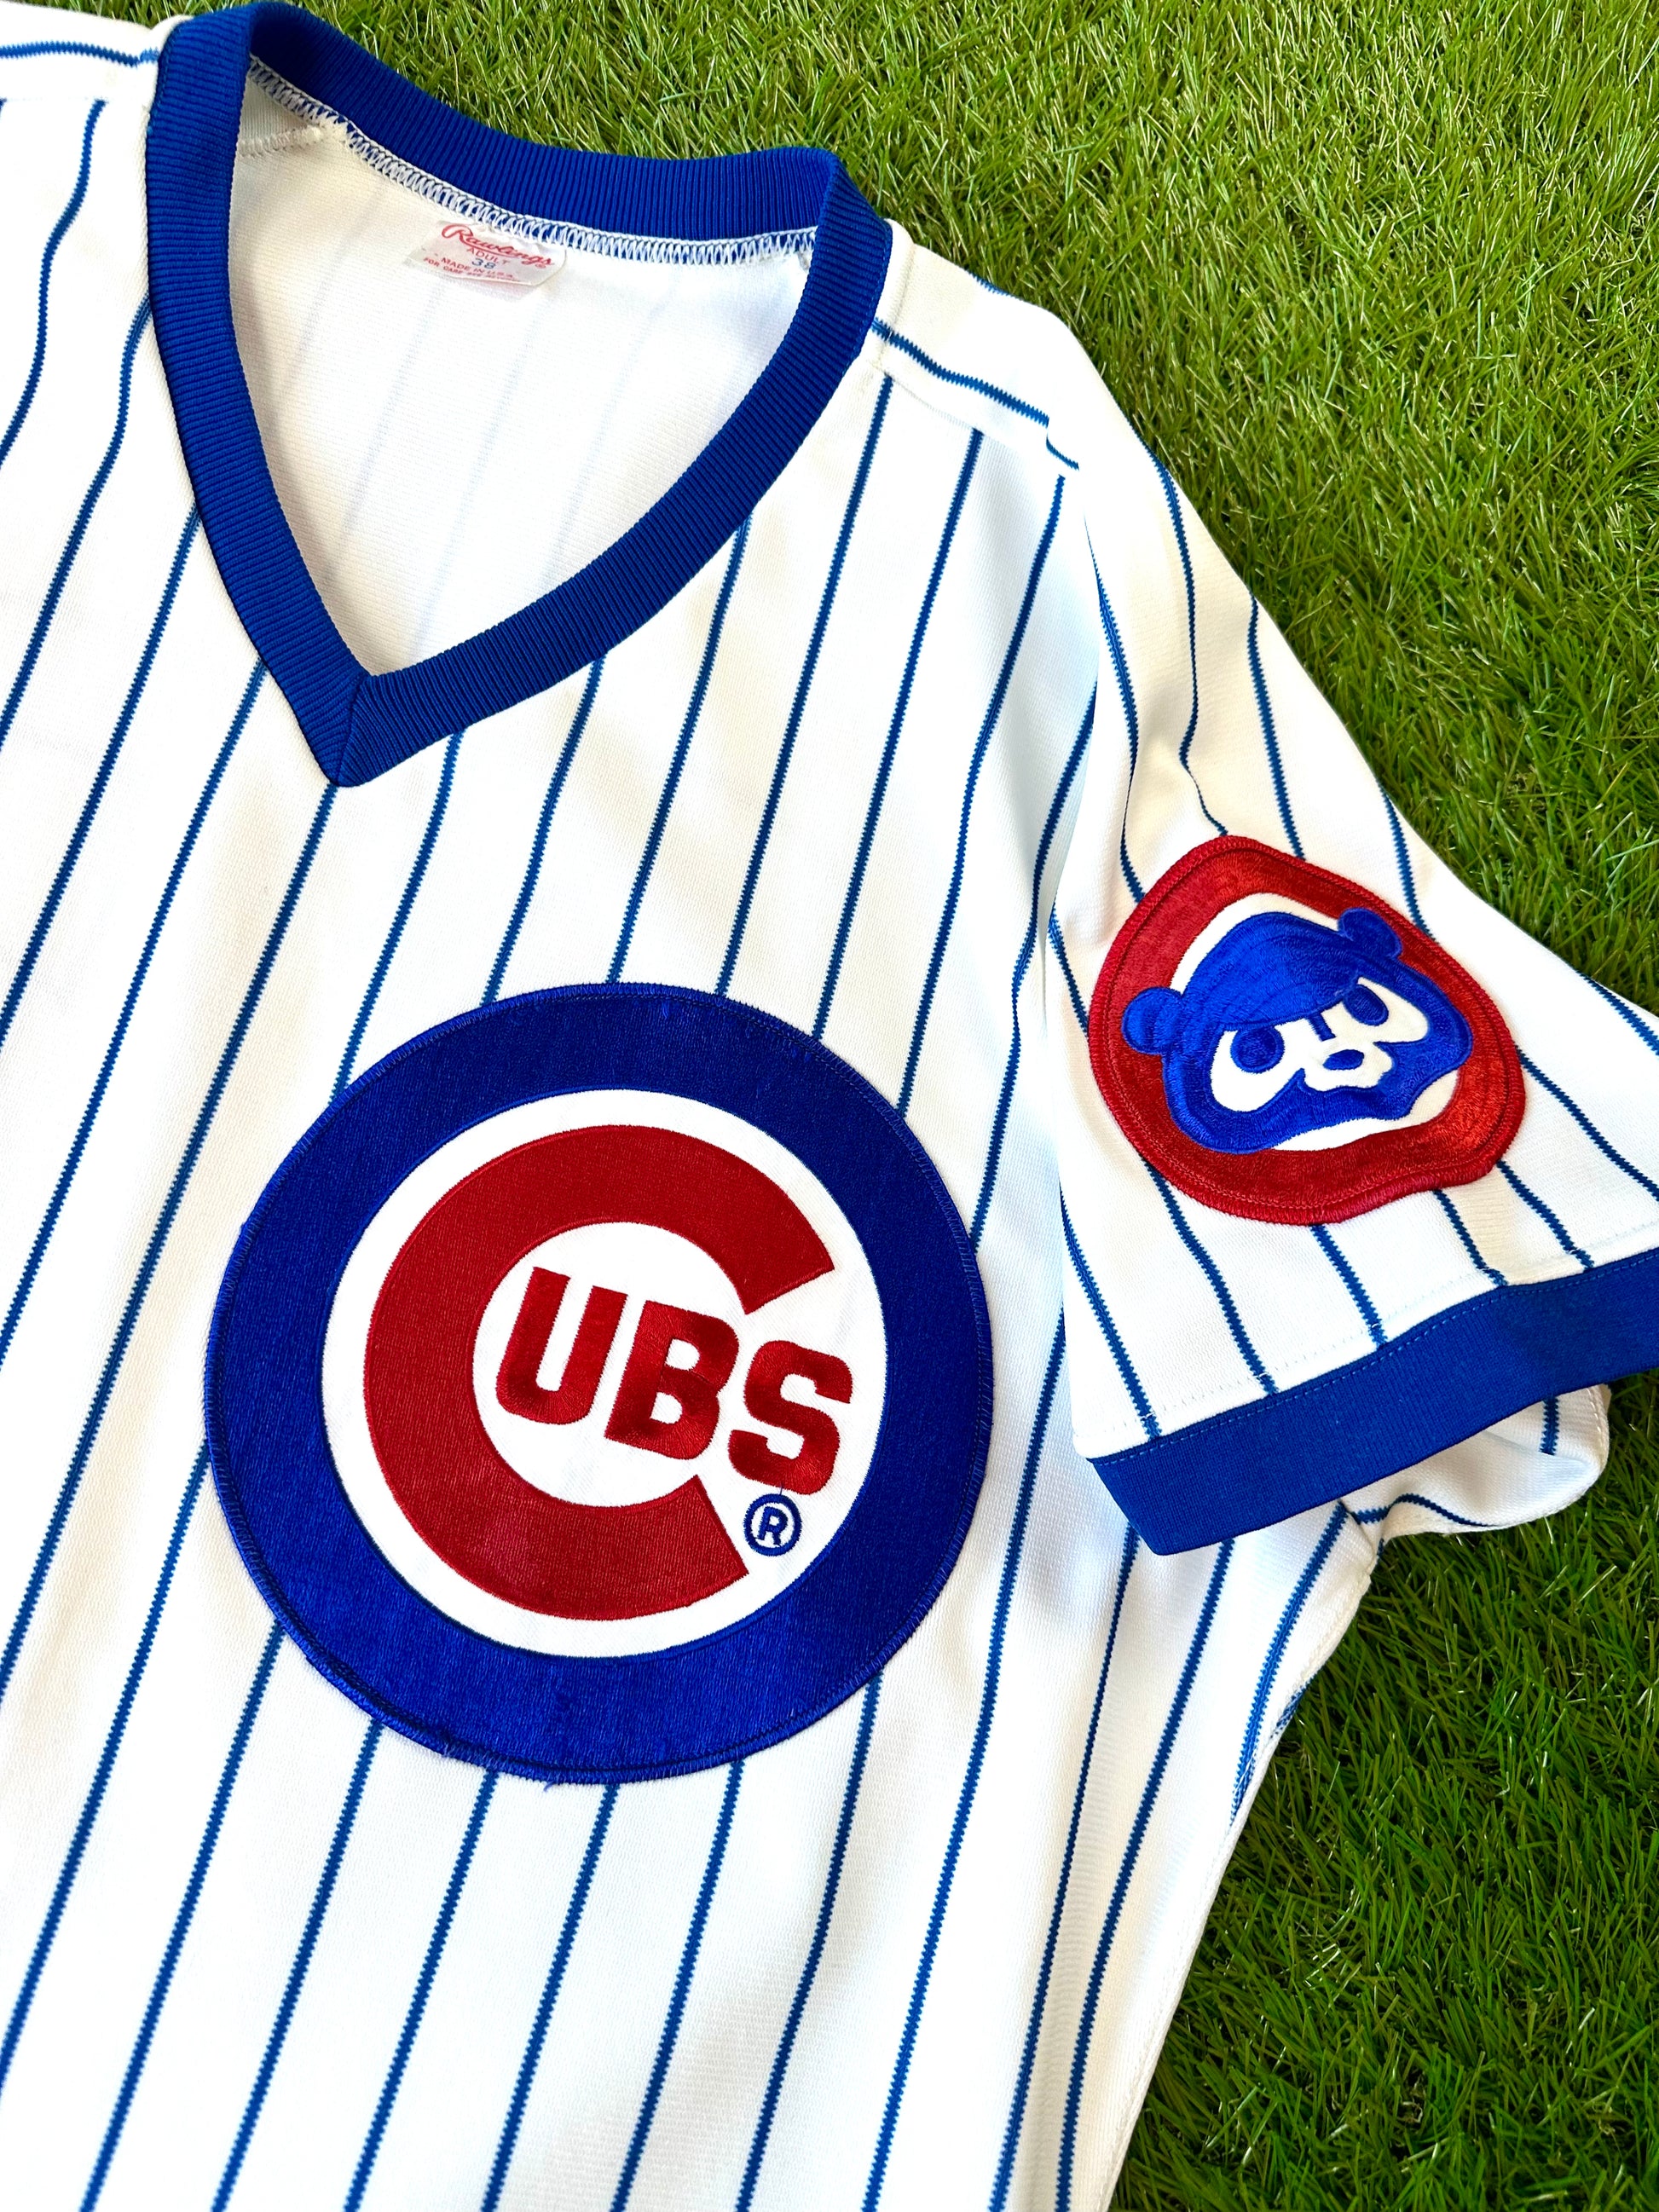 cubs baseball jersey cheap